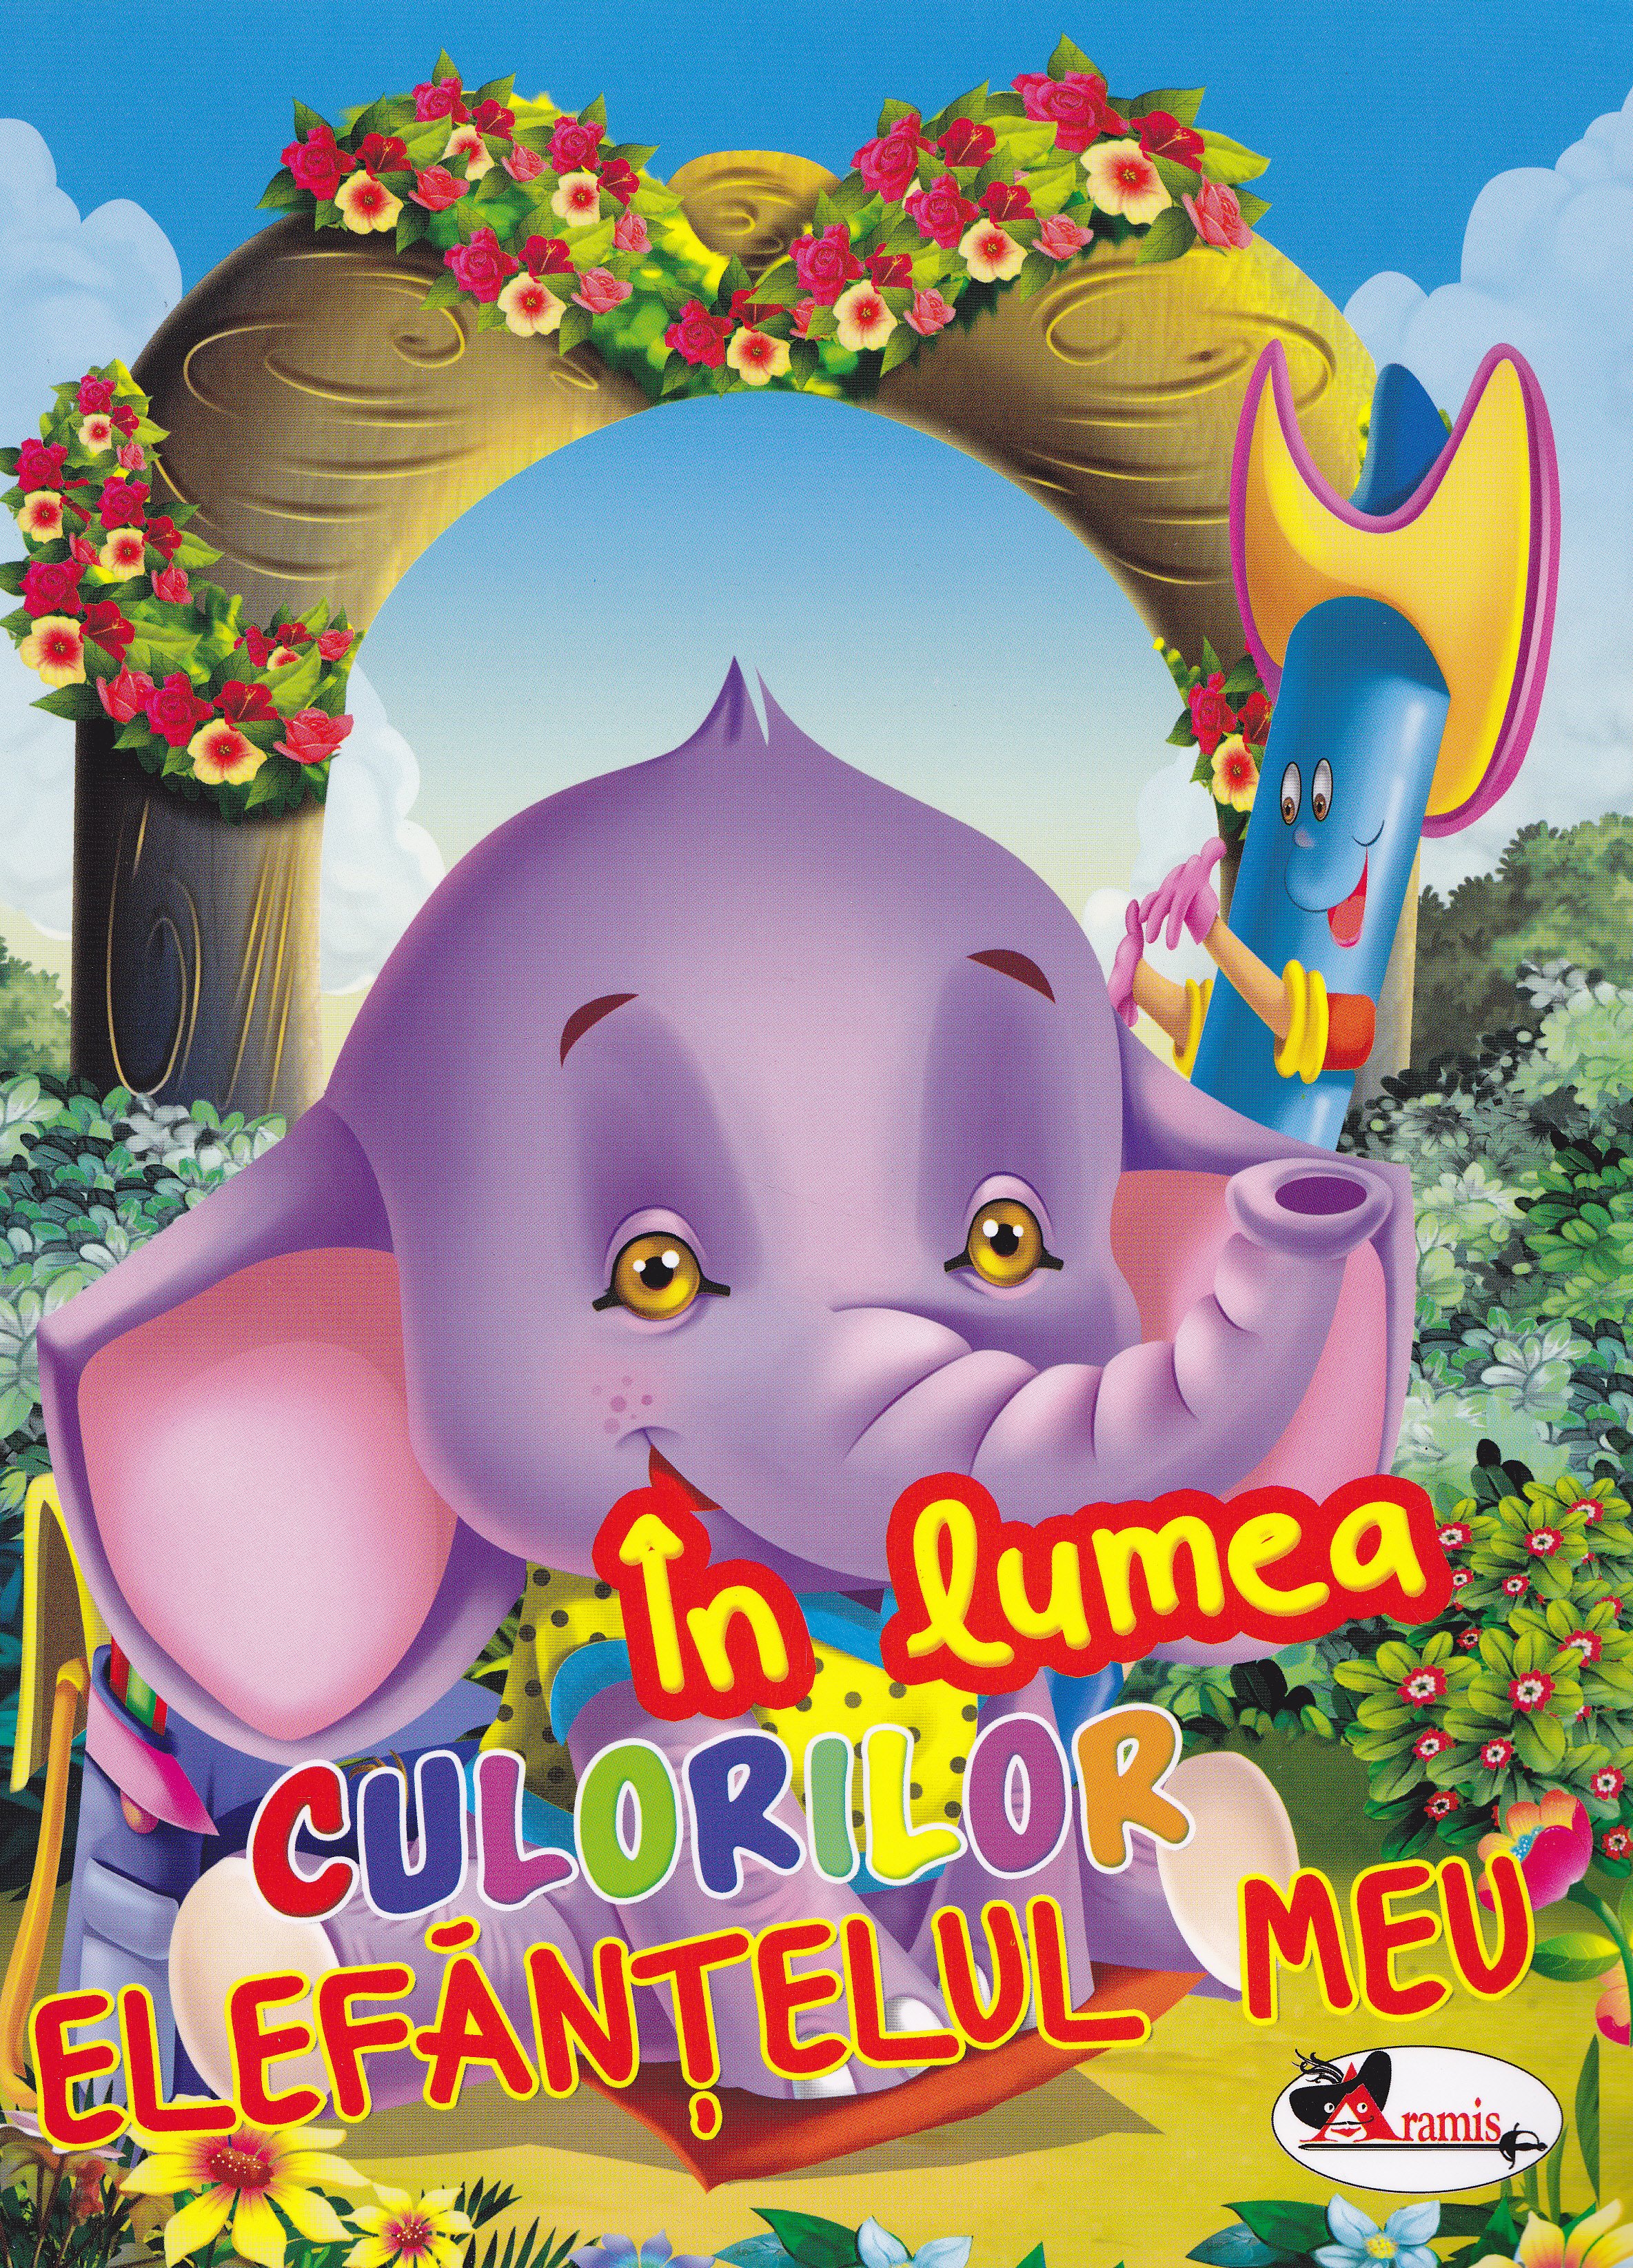 In lumea culorilor - Elefantelul meu